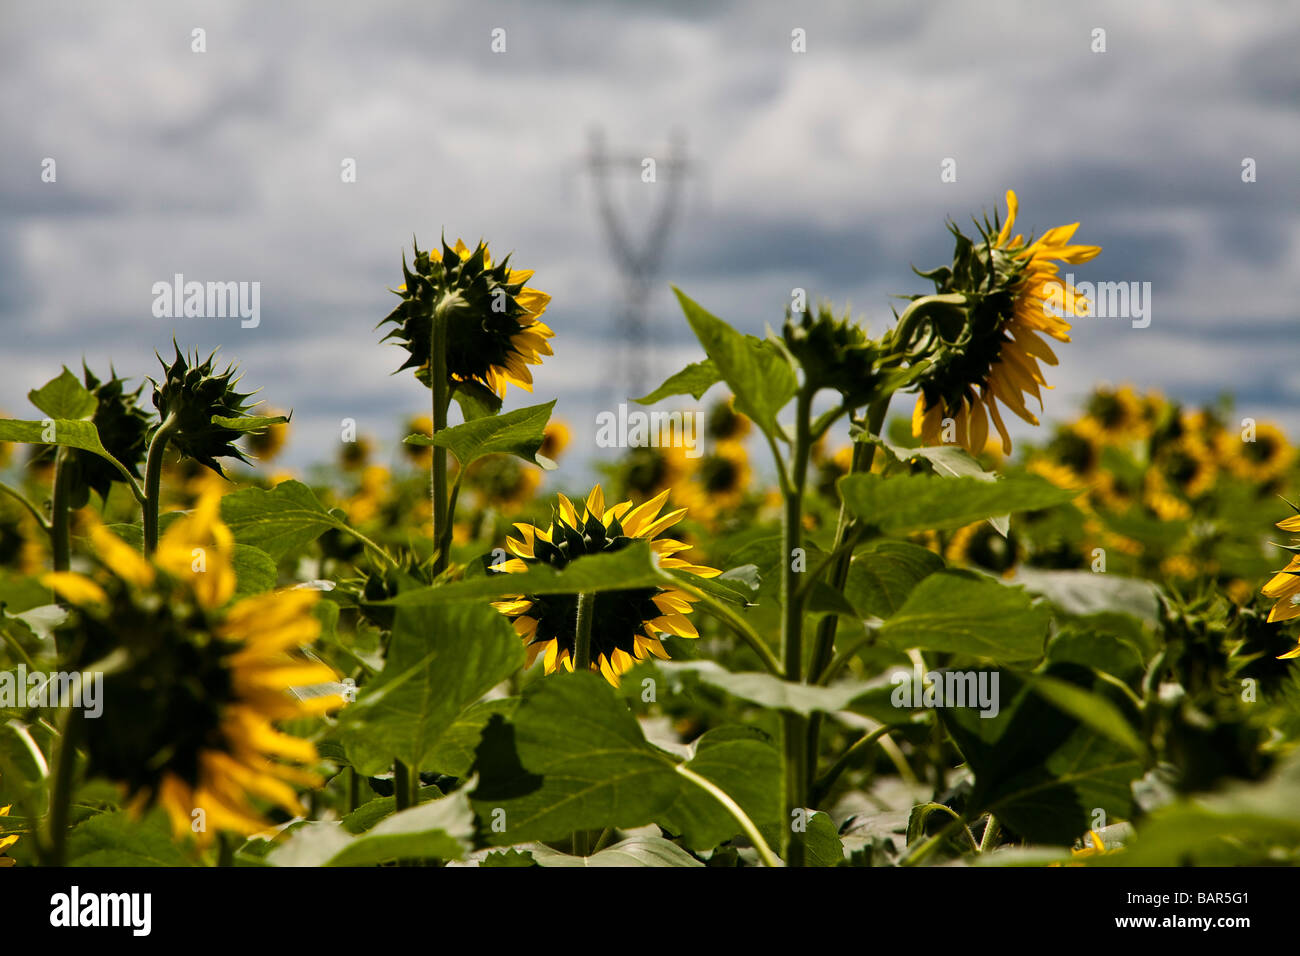 Sonnenblume-Plantage für Pflanzenöl Produktion Fernmeldeturm im ländlichen Bereich Verteilung von elektrischer Energie Stockfoto